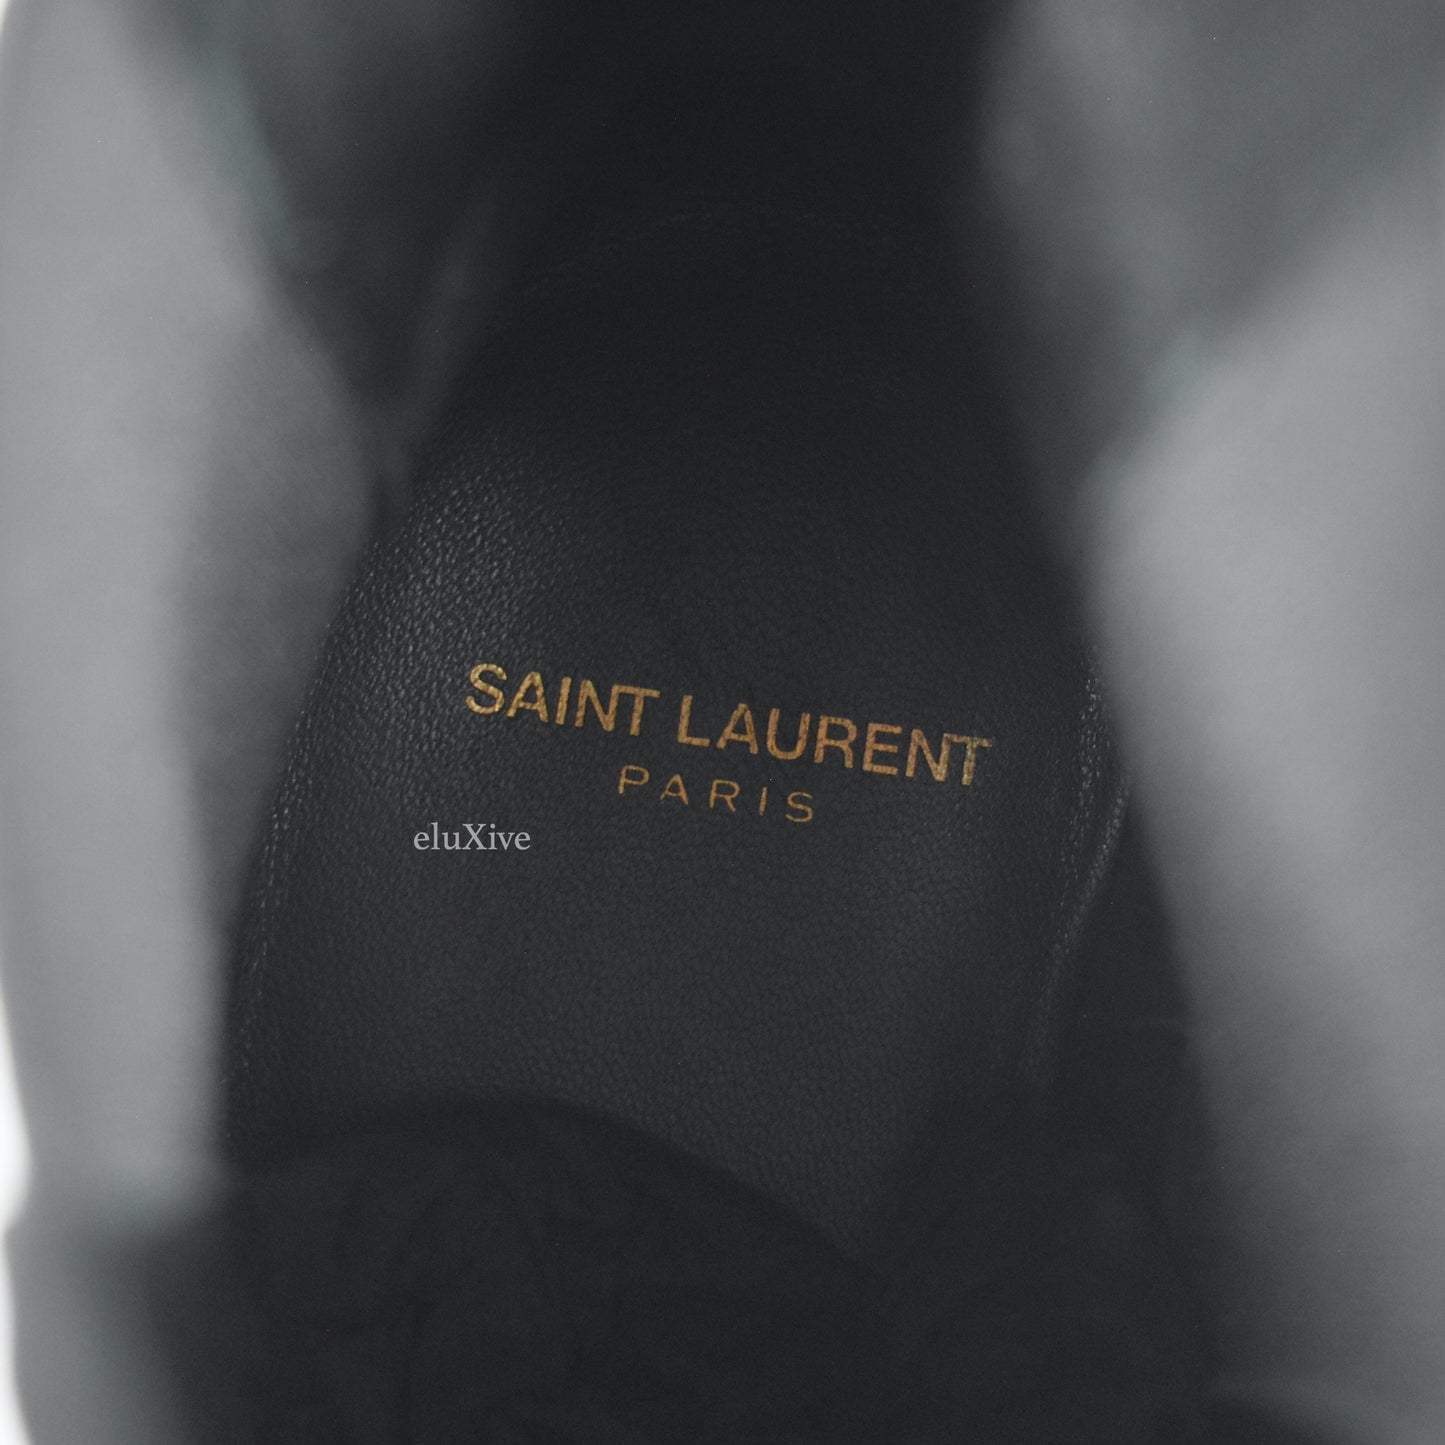 Saint Laurent - Black Suede Dylan Chelsea Boots